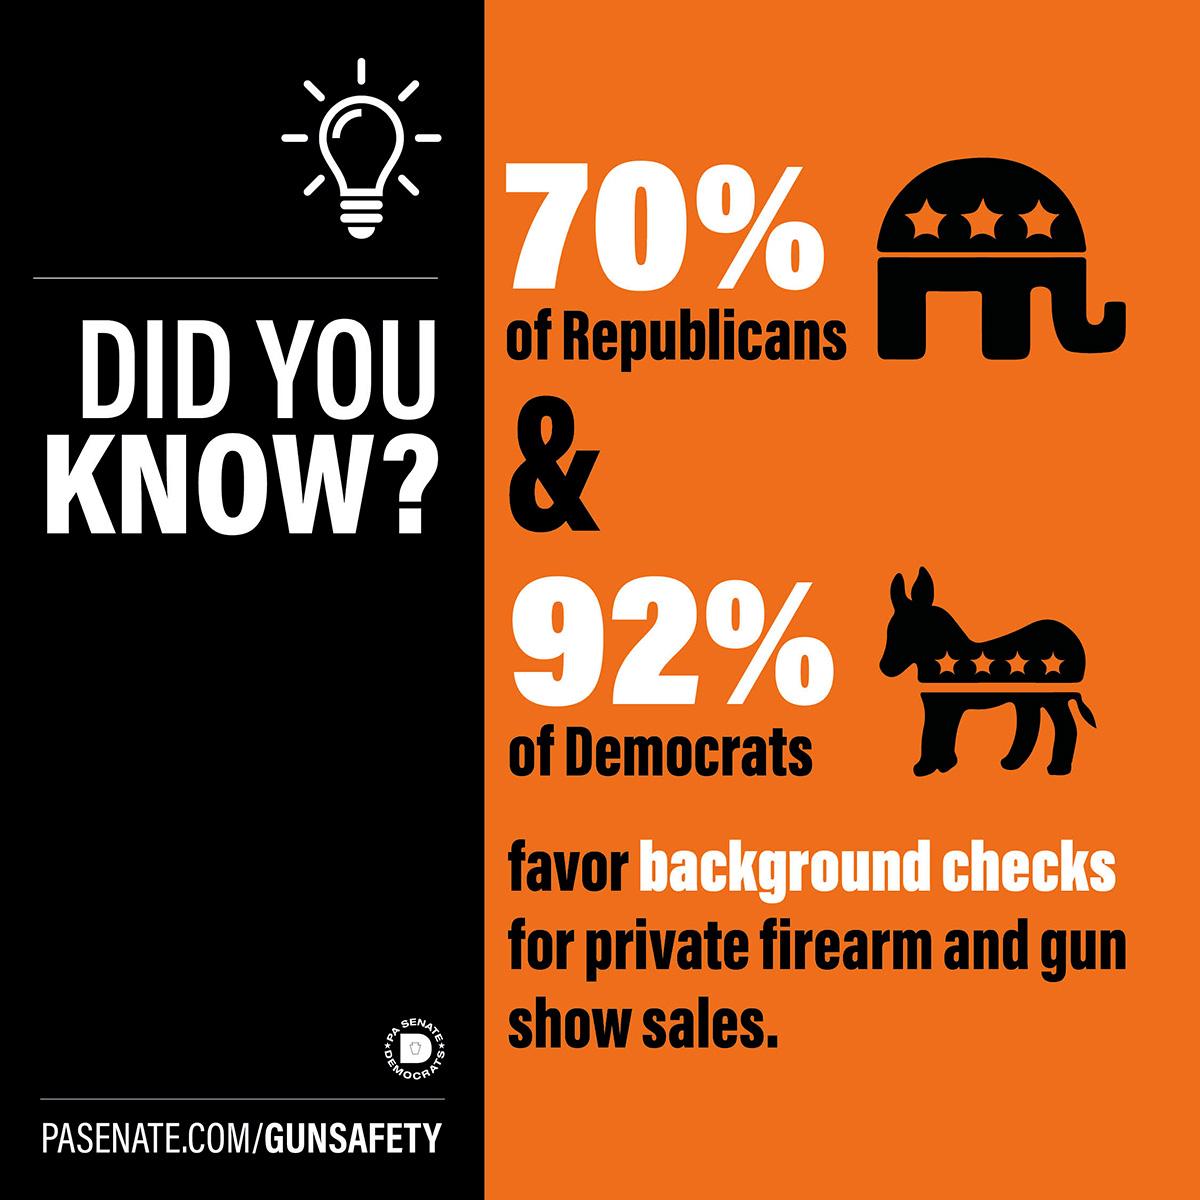 ¿Sabía que? El 70% de los republicanos y el 92% de los demócratas están a favor de la comprobación de antecedentes en las ventas privadas de armas de fuego y en las ferias de armas.